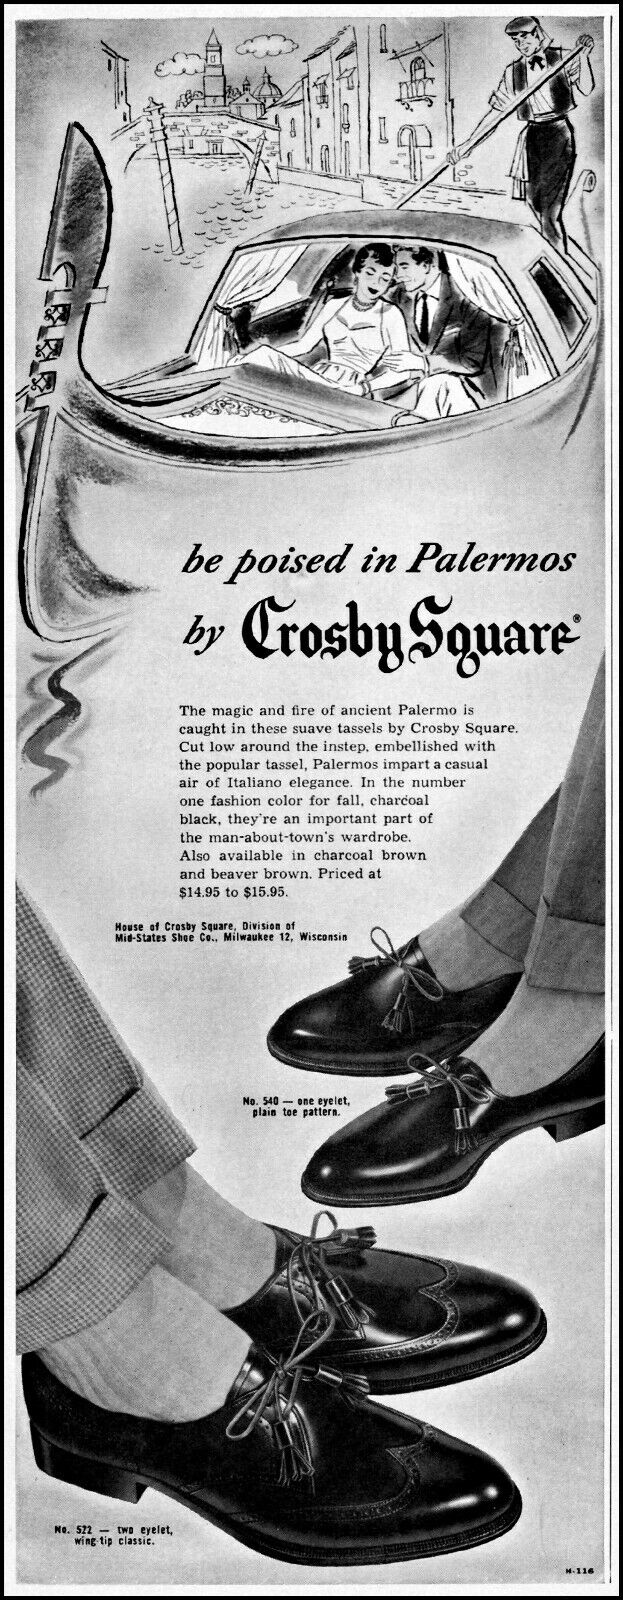 1955 Venice gondolier Crosby Square Palermos shoes vintage art Print Ad adL17